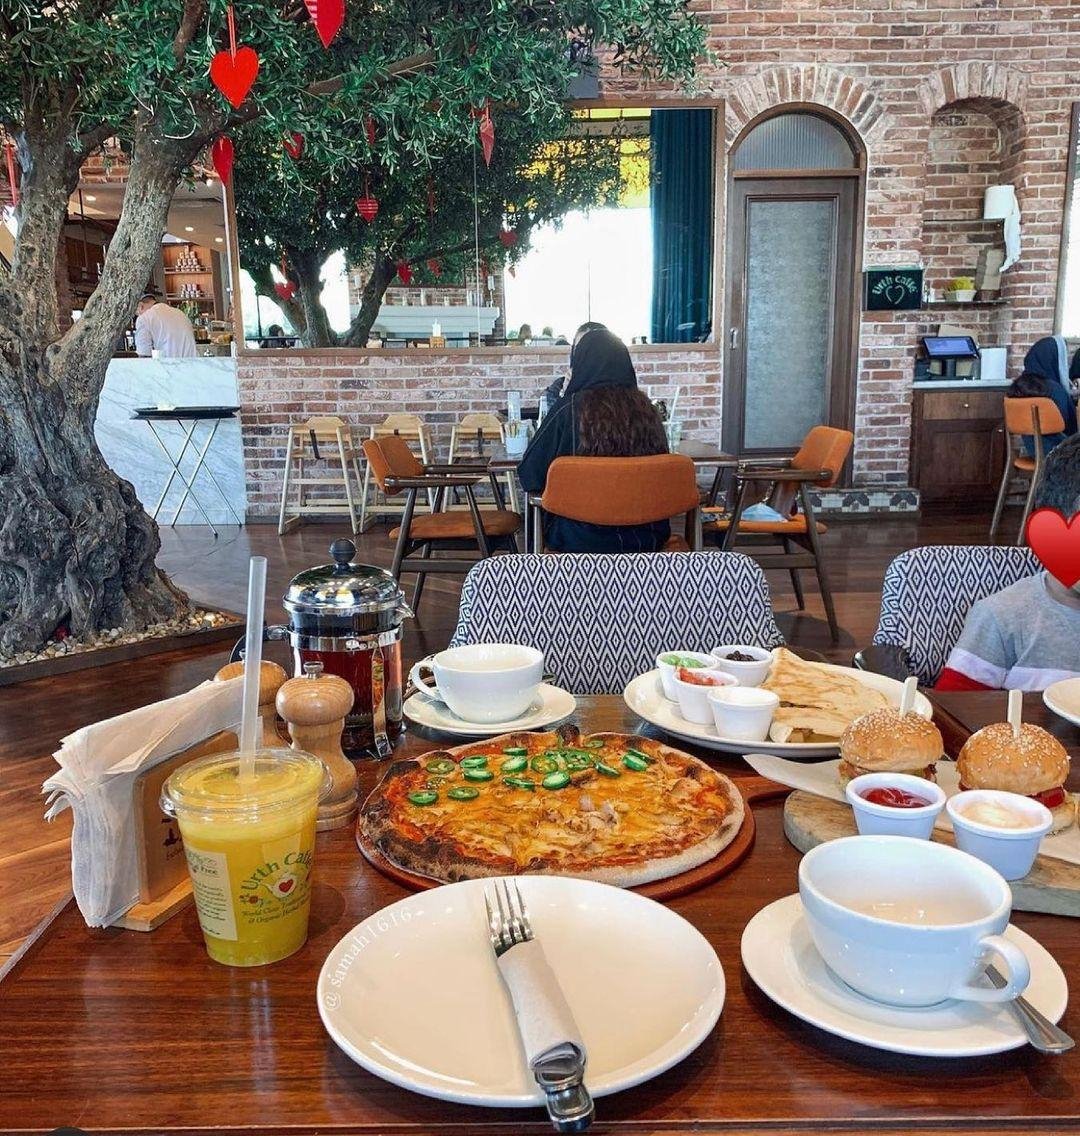 مقاهي    مقهى   شاي    افضل مقاهي جدة   افضل مقهى في جدة   جدة   المملكة العرية السعودية   السعودية